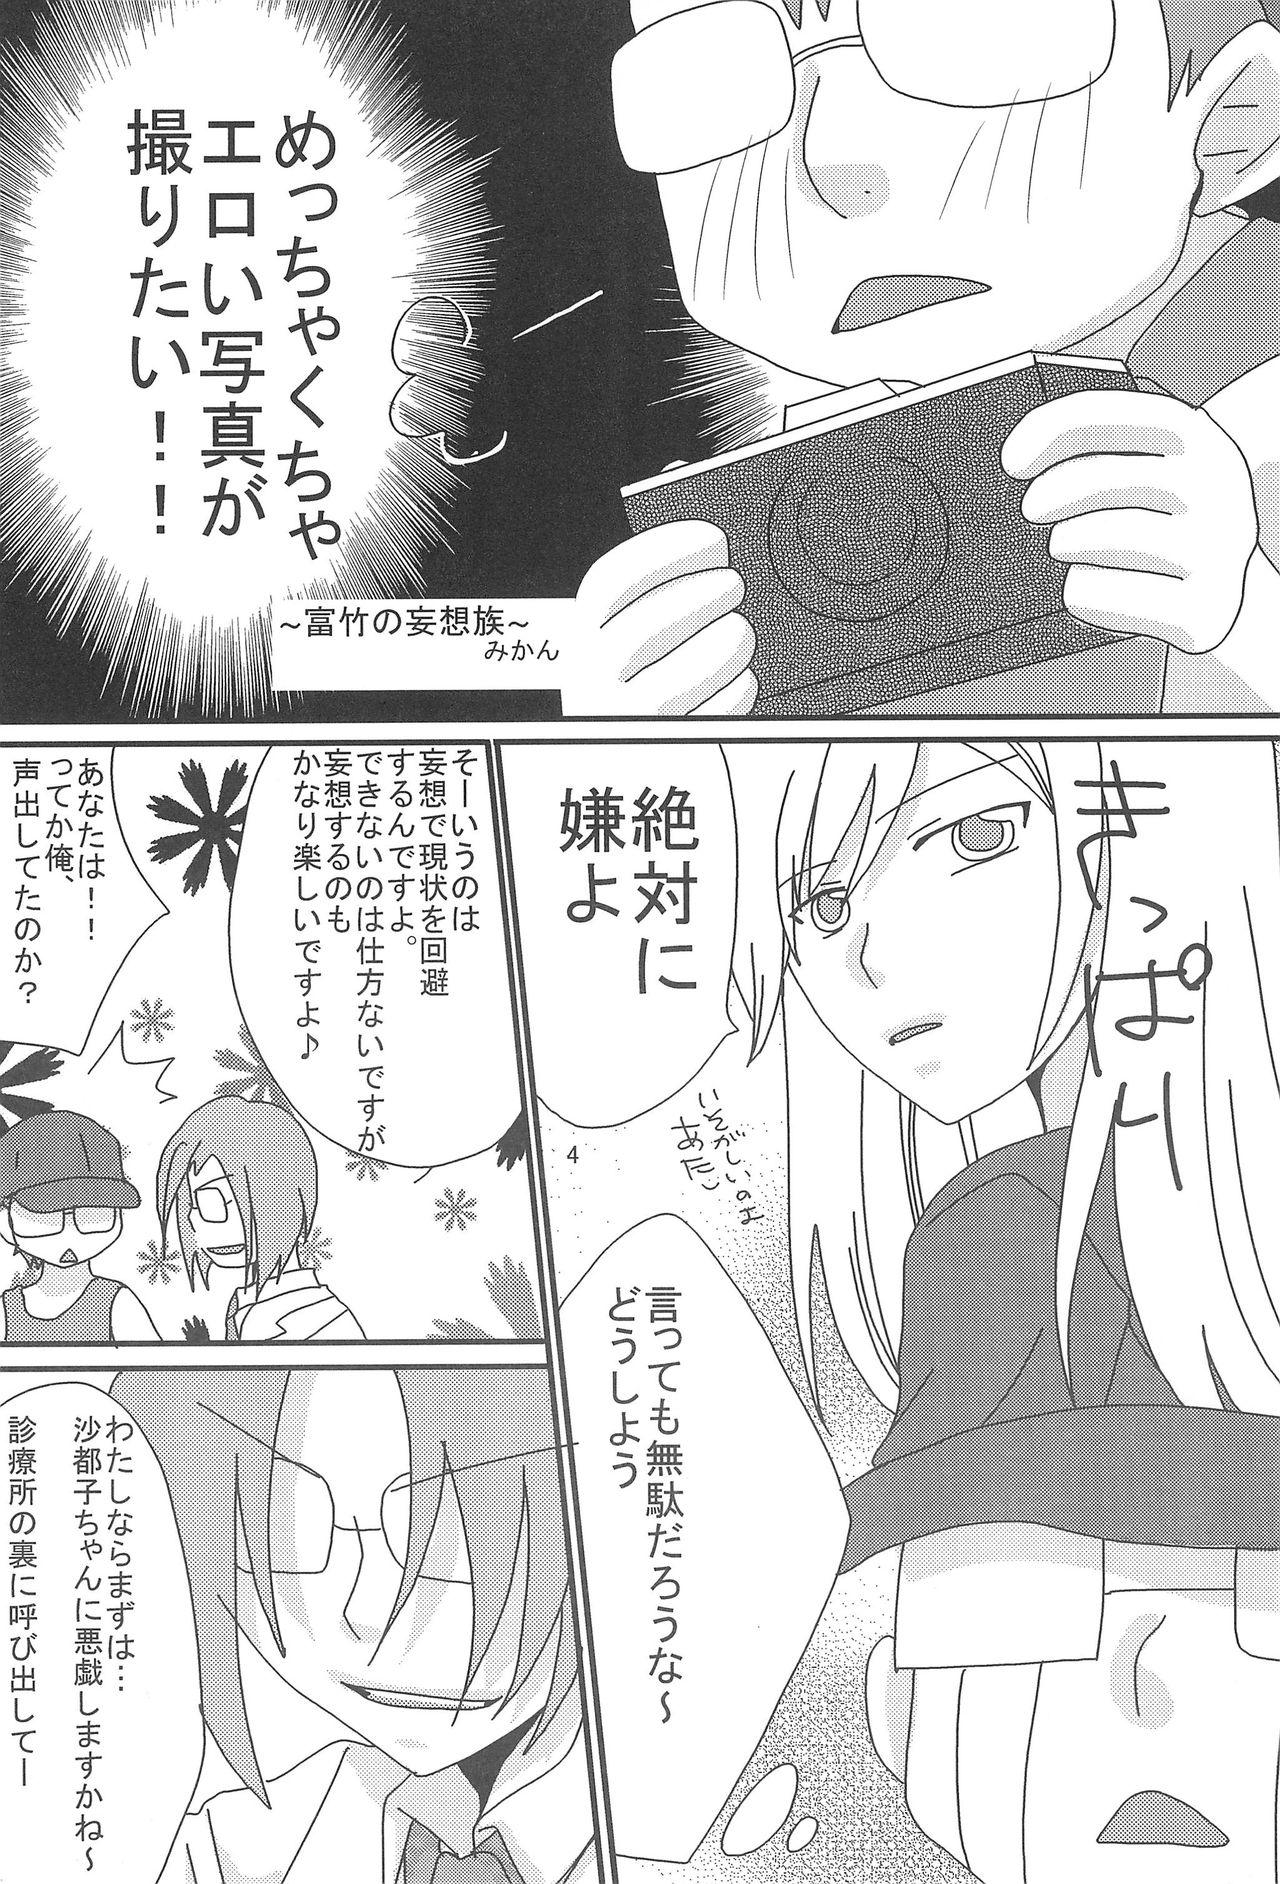 Lesbiansex Hina Pafu - Higurashi no naku koro ni Smooth - Page 6